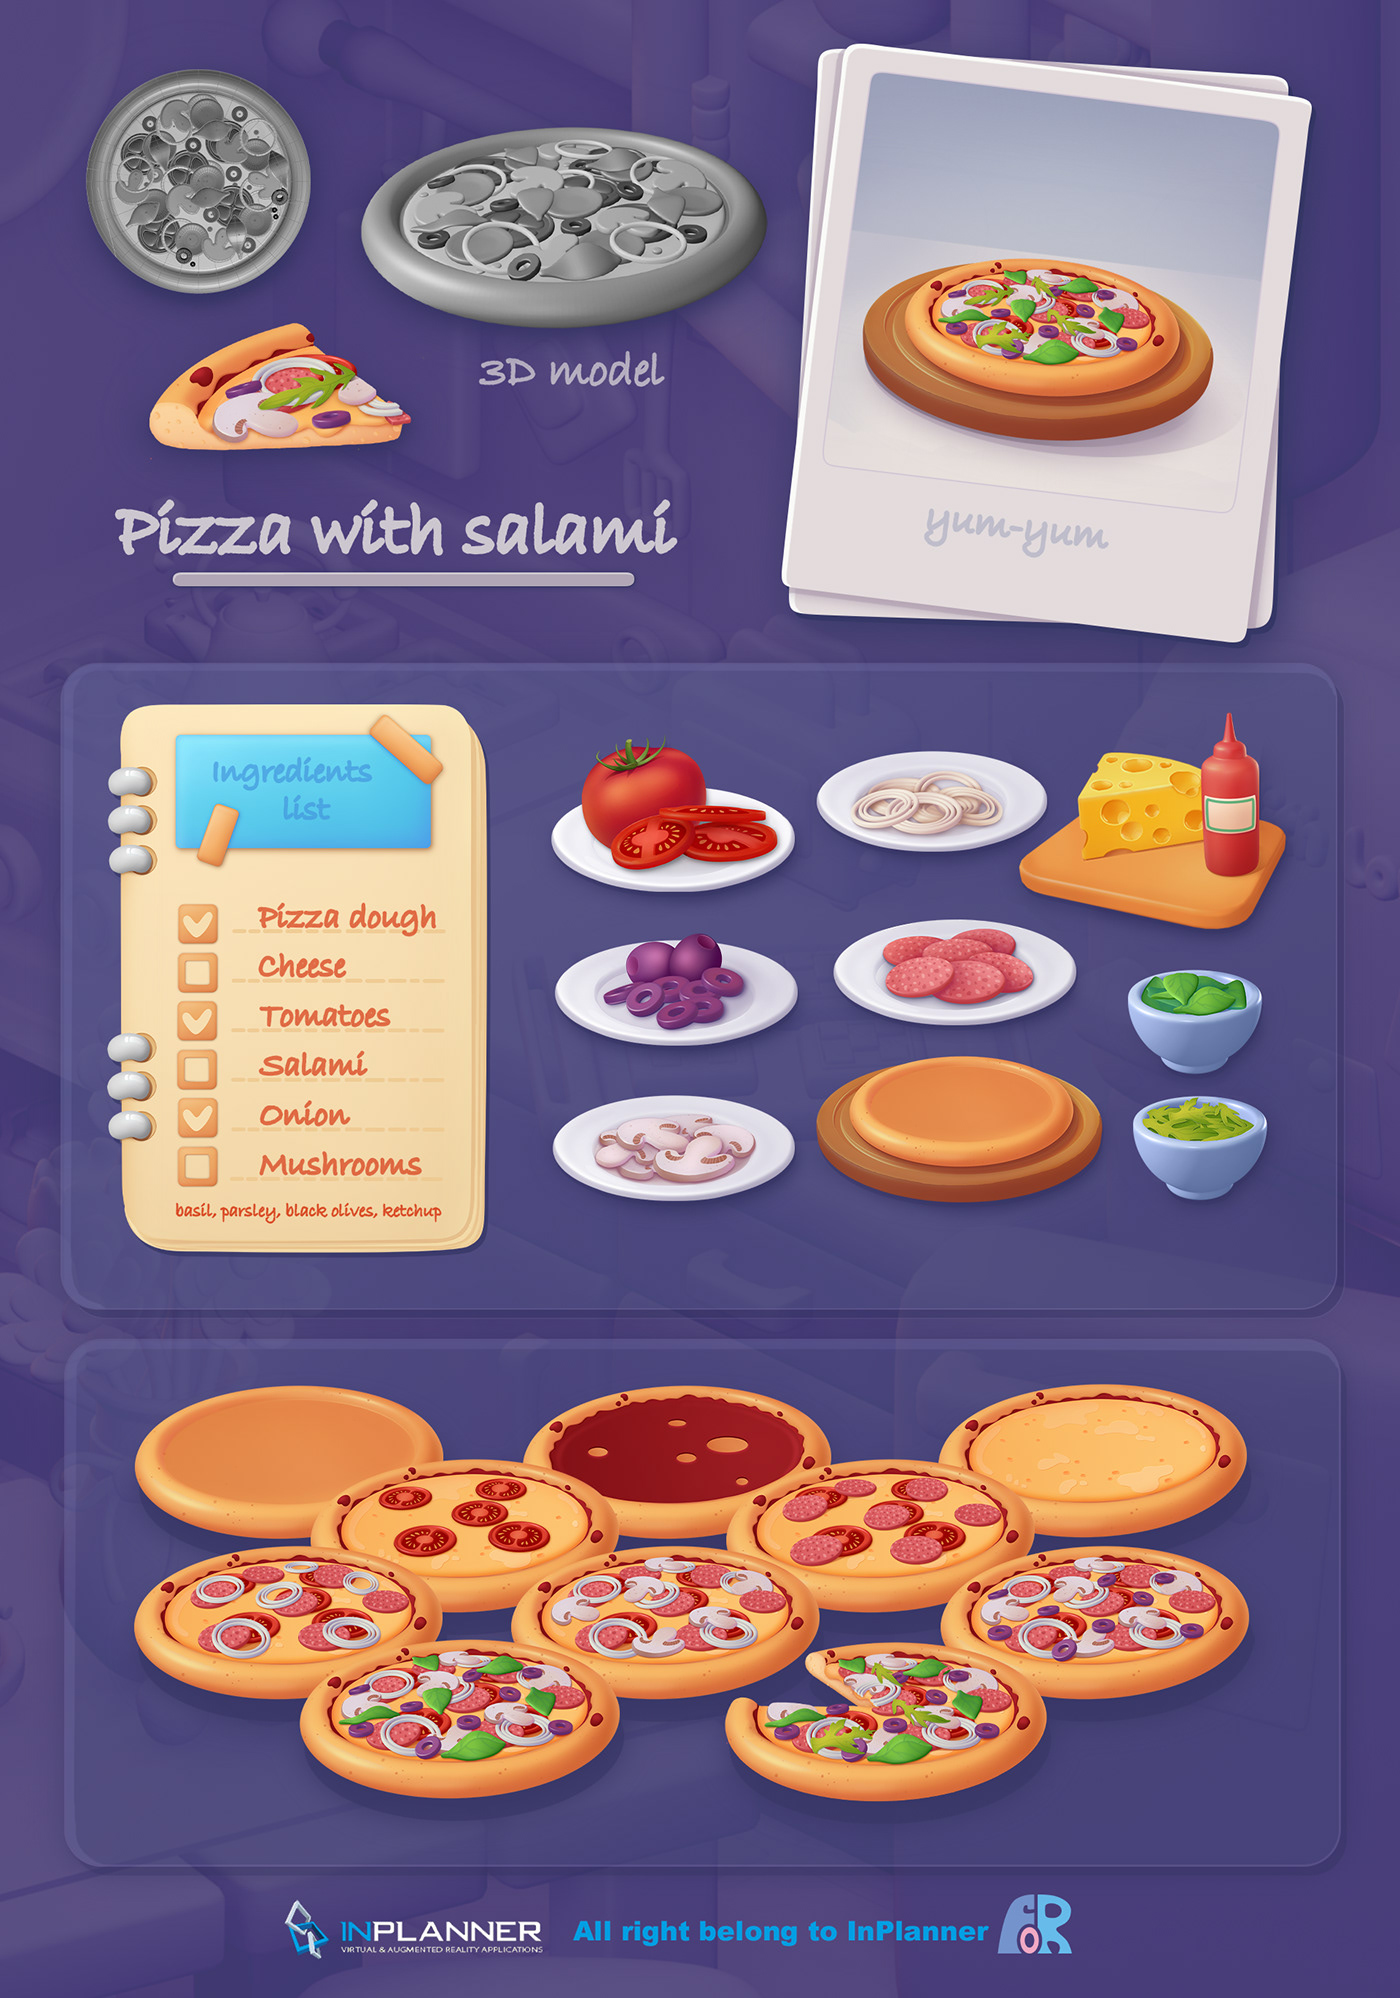 Pizza hamburguer Pasta desert 2D art cooking kitchen 3D cartoon Digital Art 